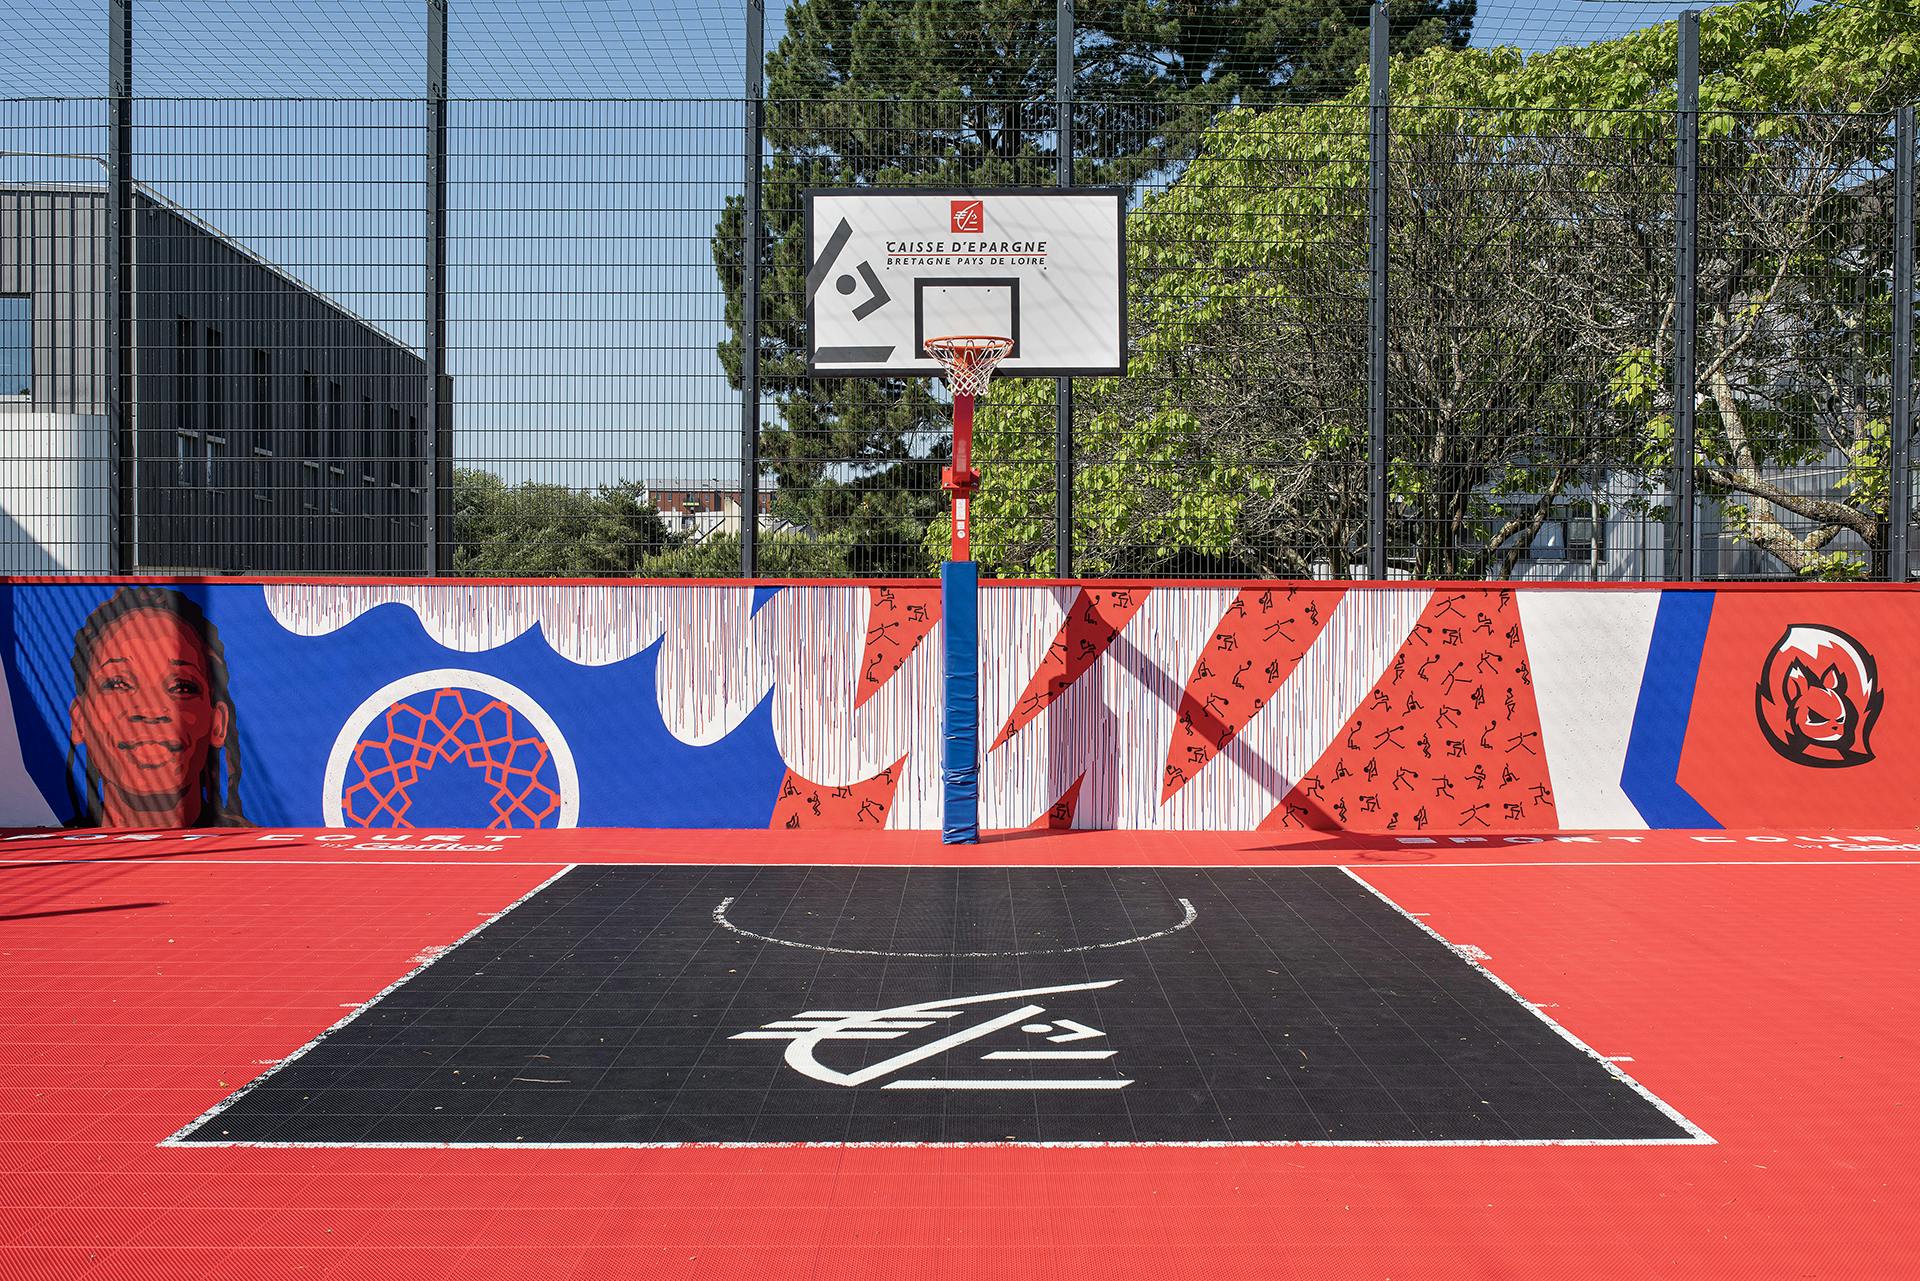 Une œuvre street art réalisée par le Studio Katra sur un terrain de basket entier en collaboration de la Caisse d'Épargne.